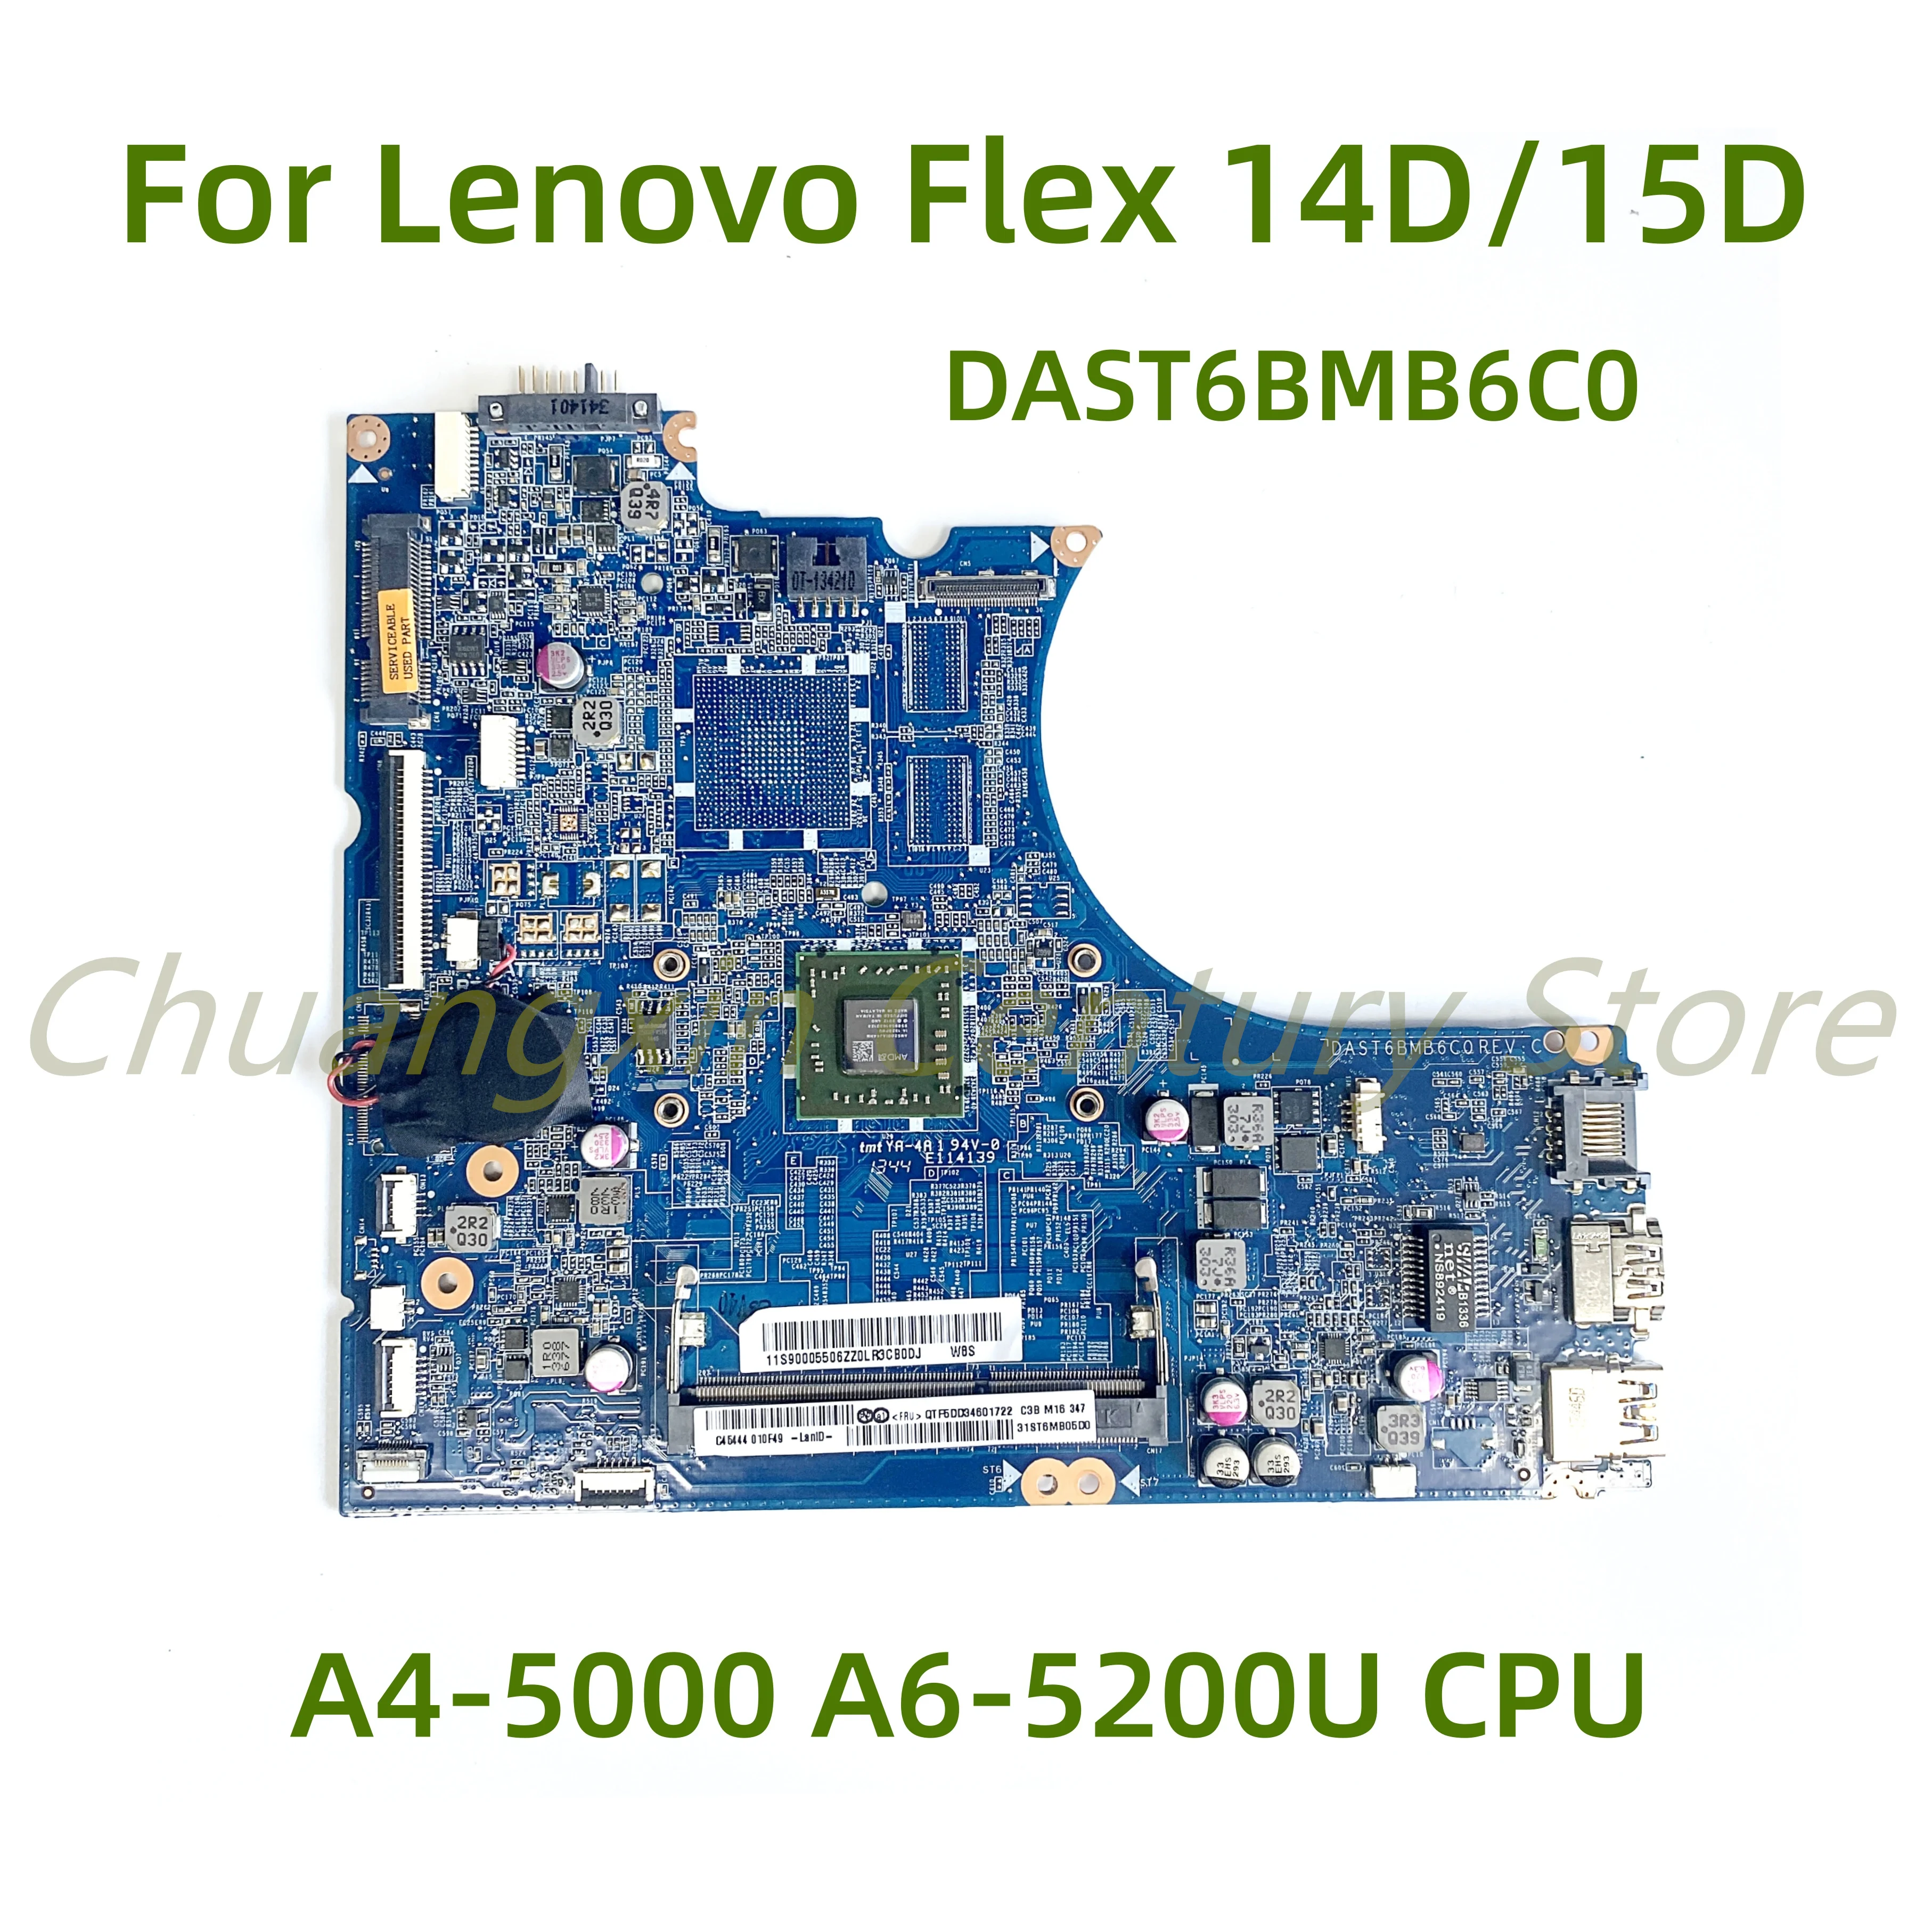 Подходит для материнской платы ноутбука Lenovo Flex 14D/15D DAST6BMB6C0 с процессором A4-5000 A6-5200U 100% Протестировано, полностью Работает